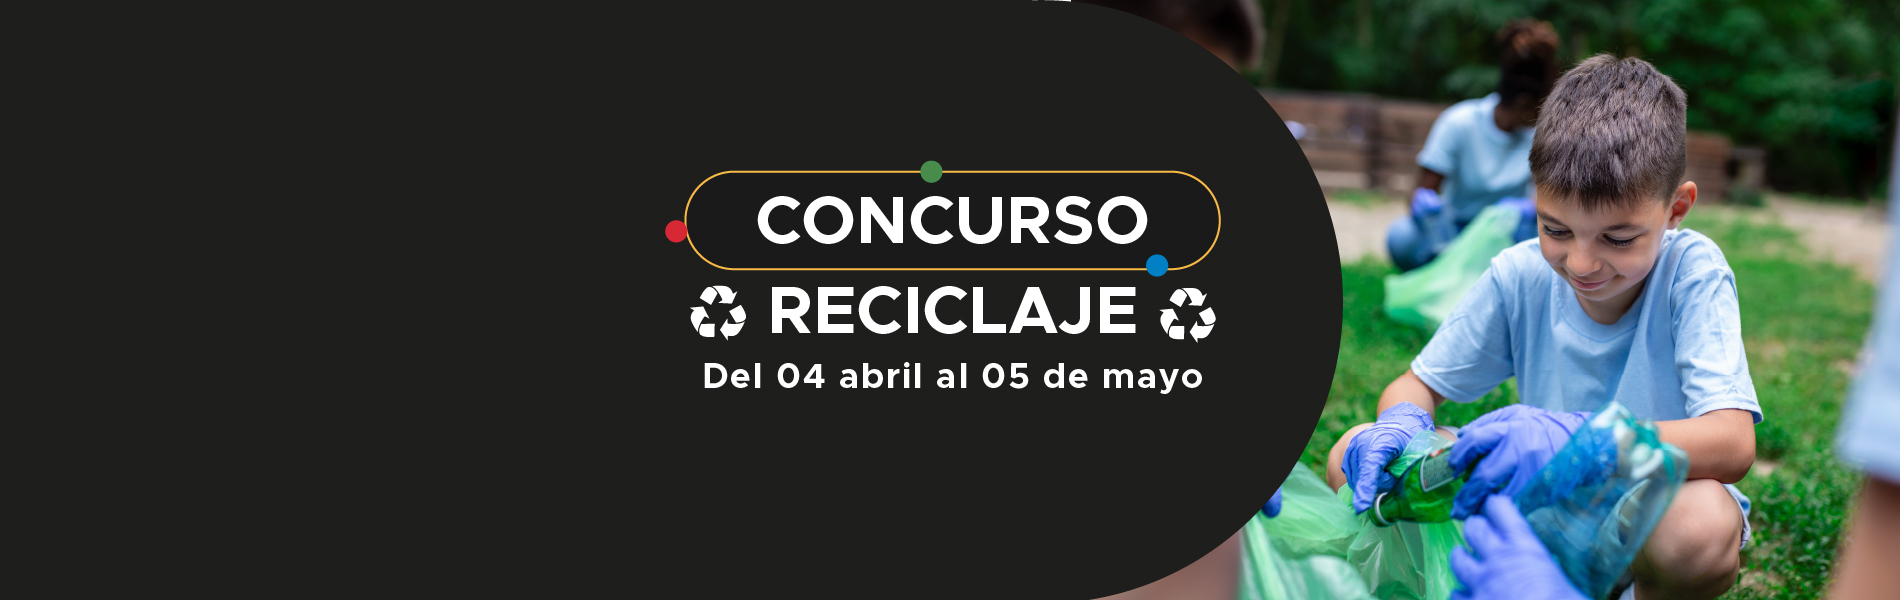 Banner concurso de reciclaje